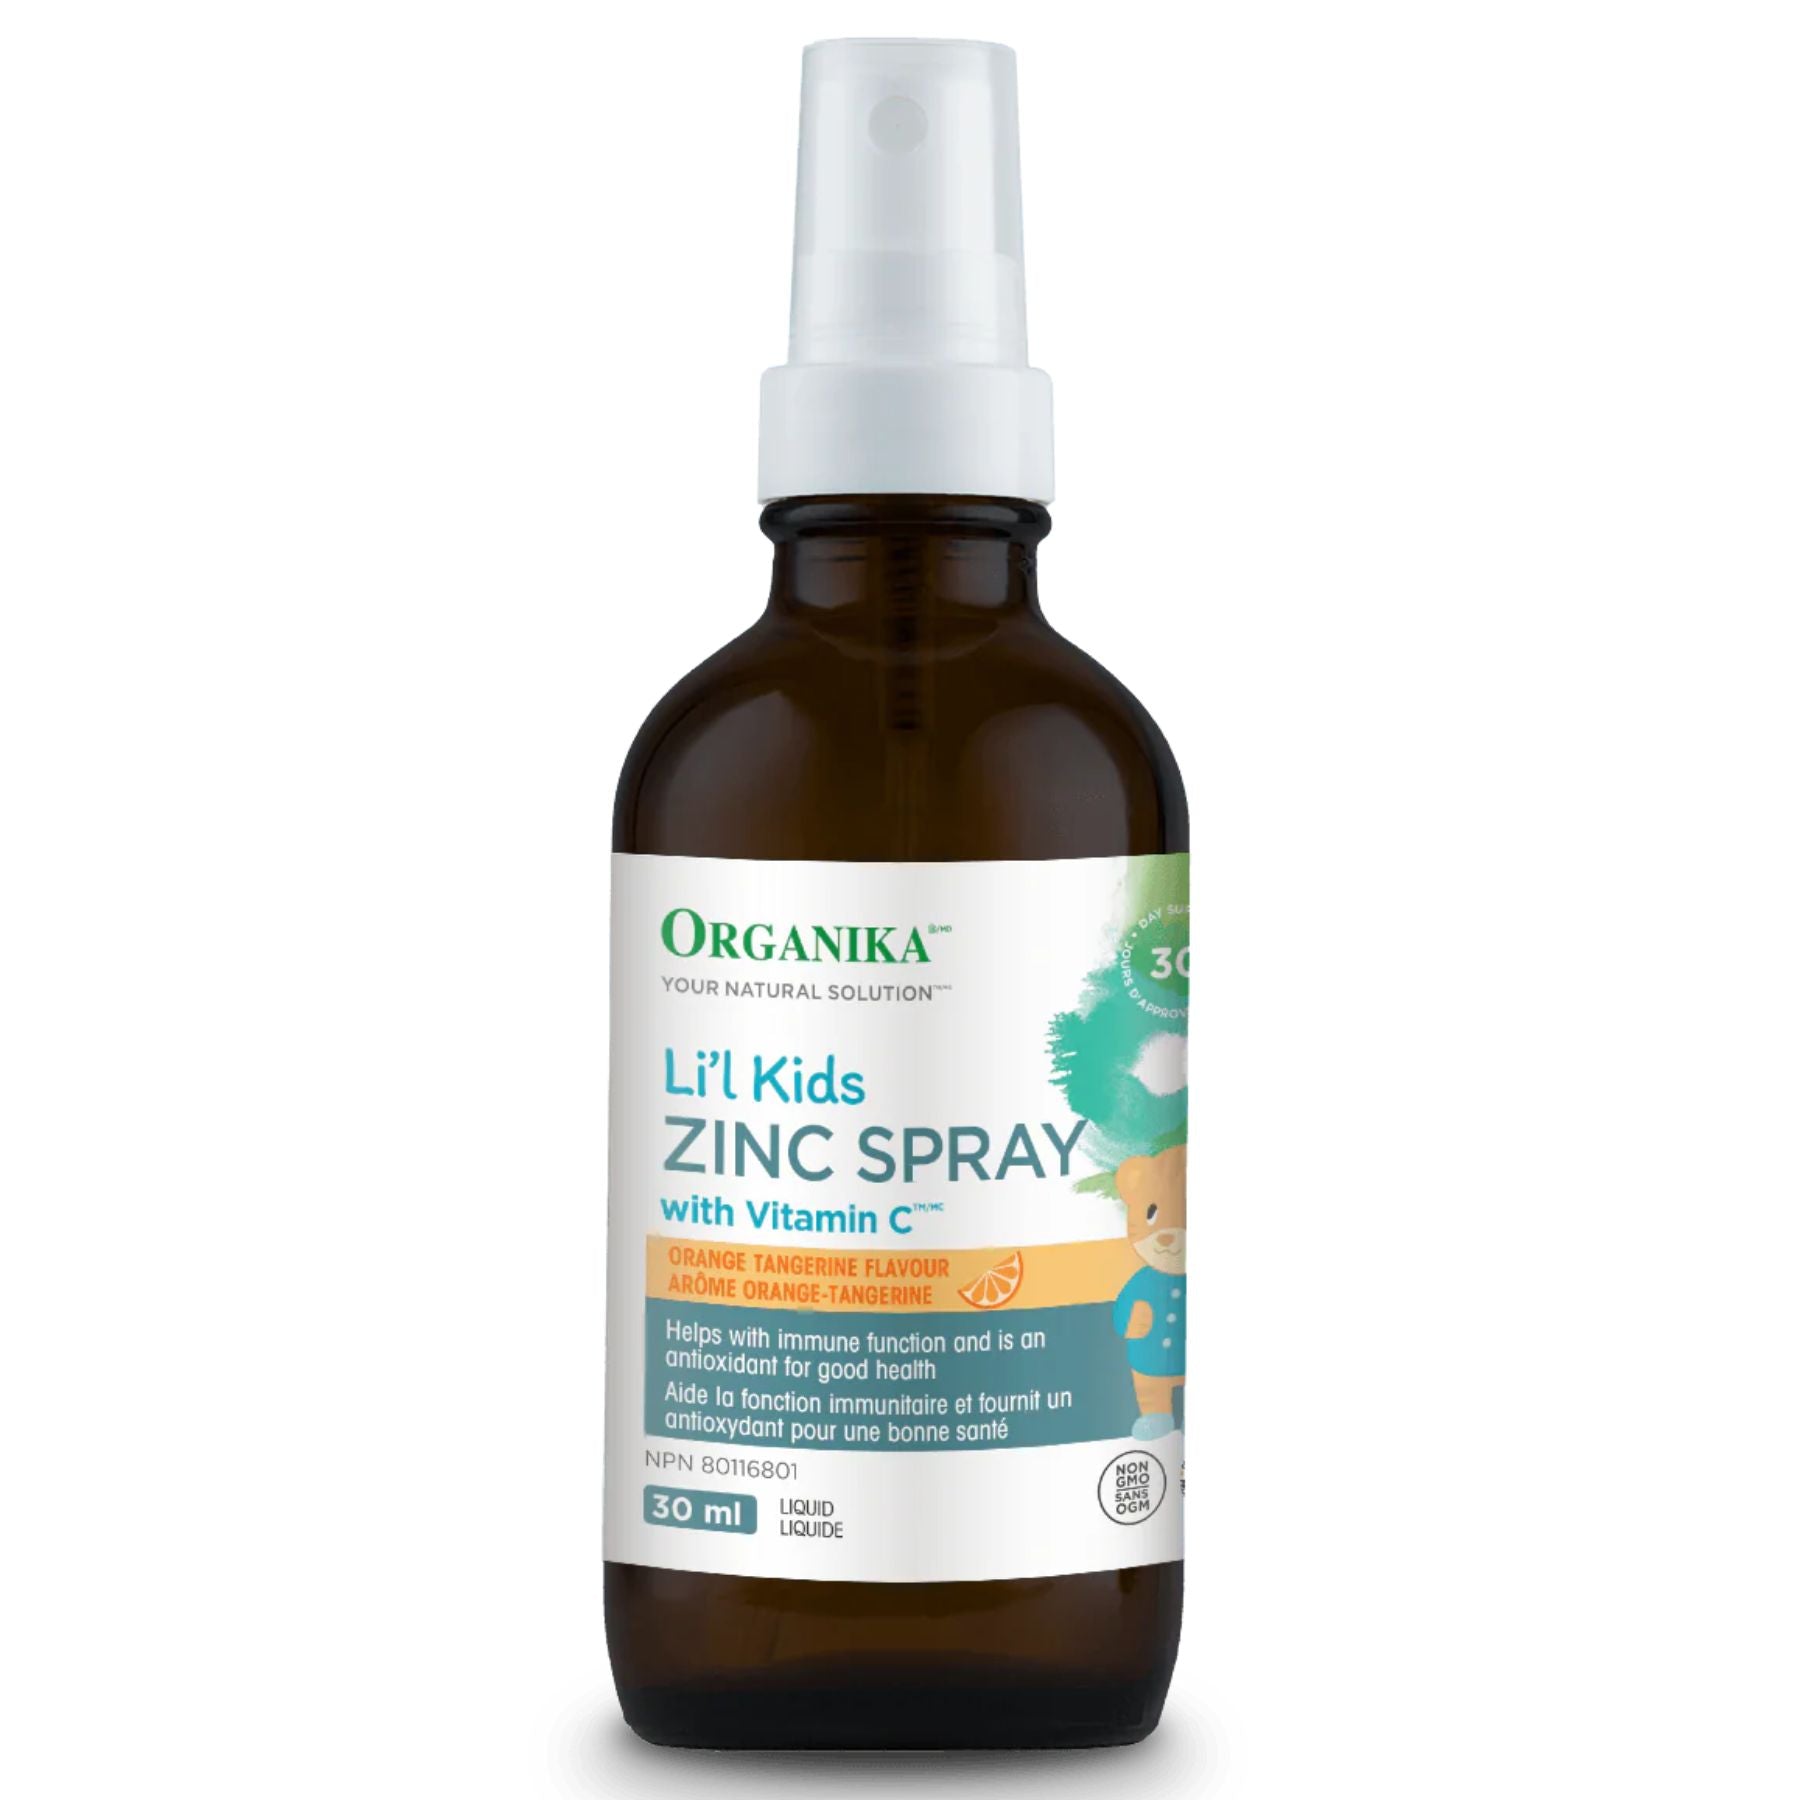 Organika Li'l Kids Zinc Spray + Vitamin C 30ml